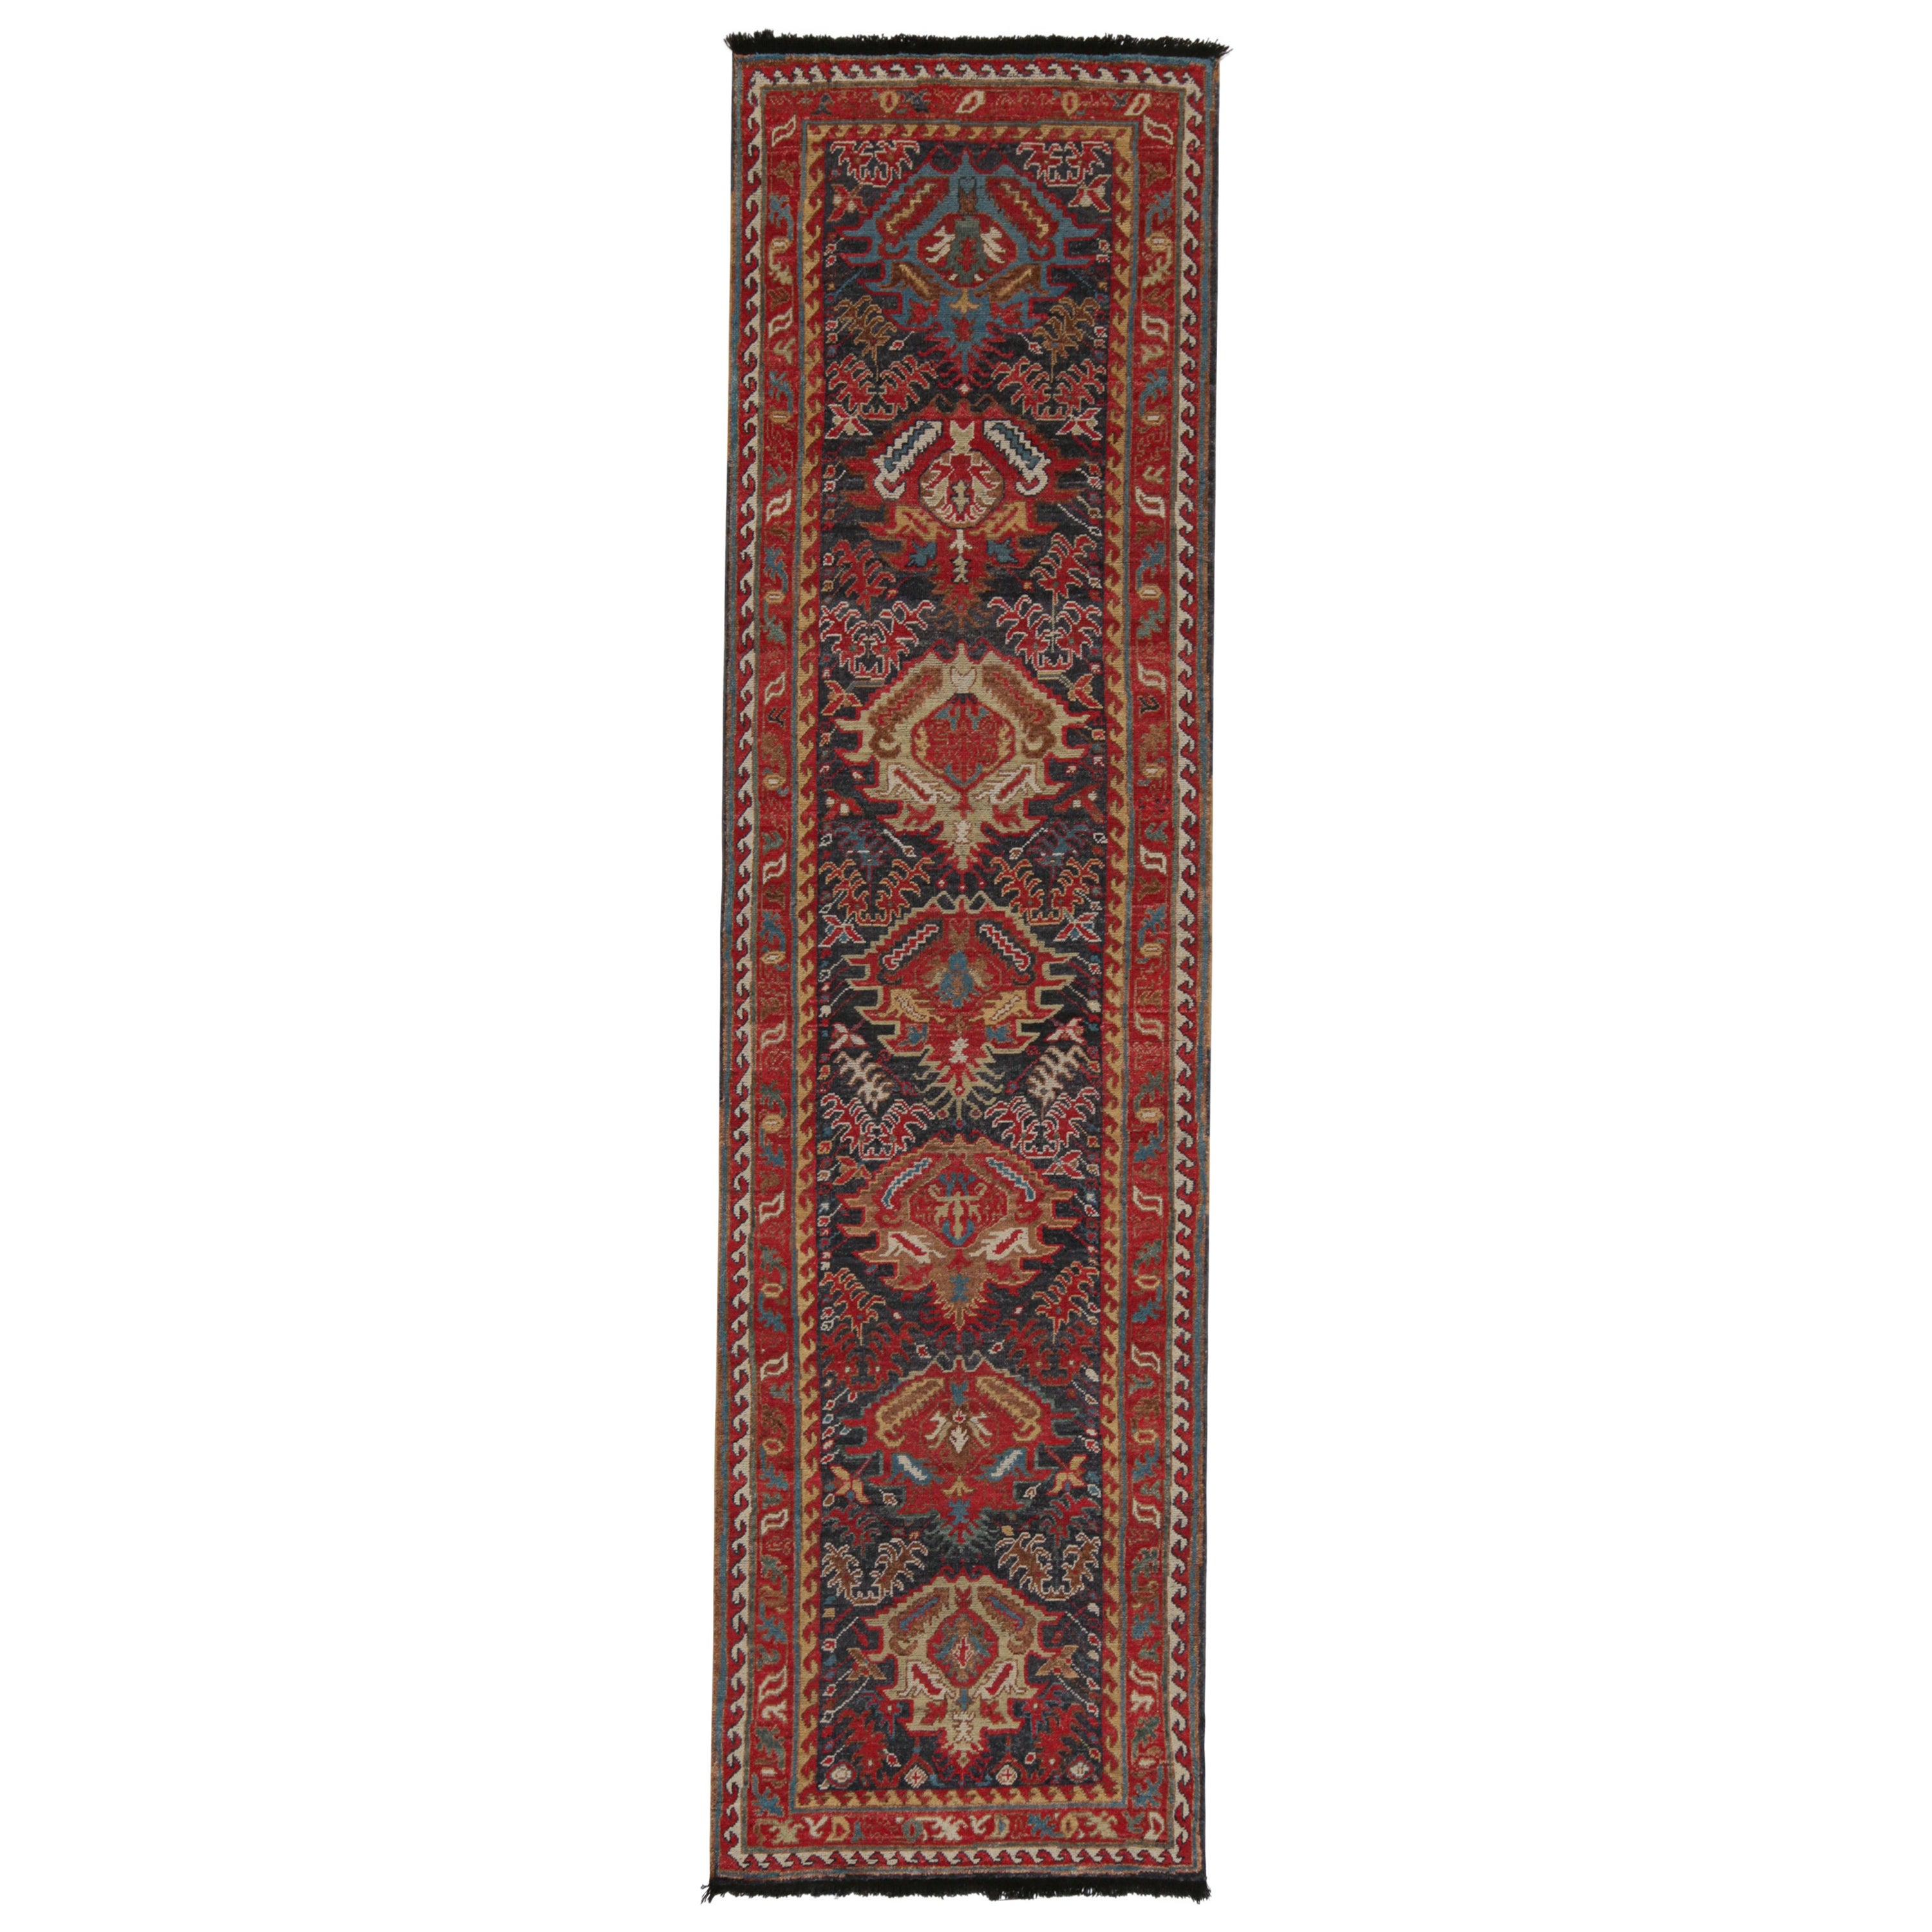 Tapis de course de style tribal de Rug & Kilim à motifs rouges, bruns et bleus